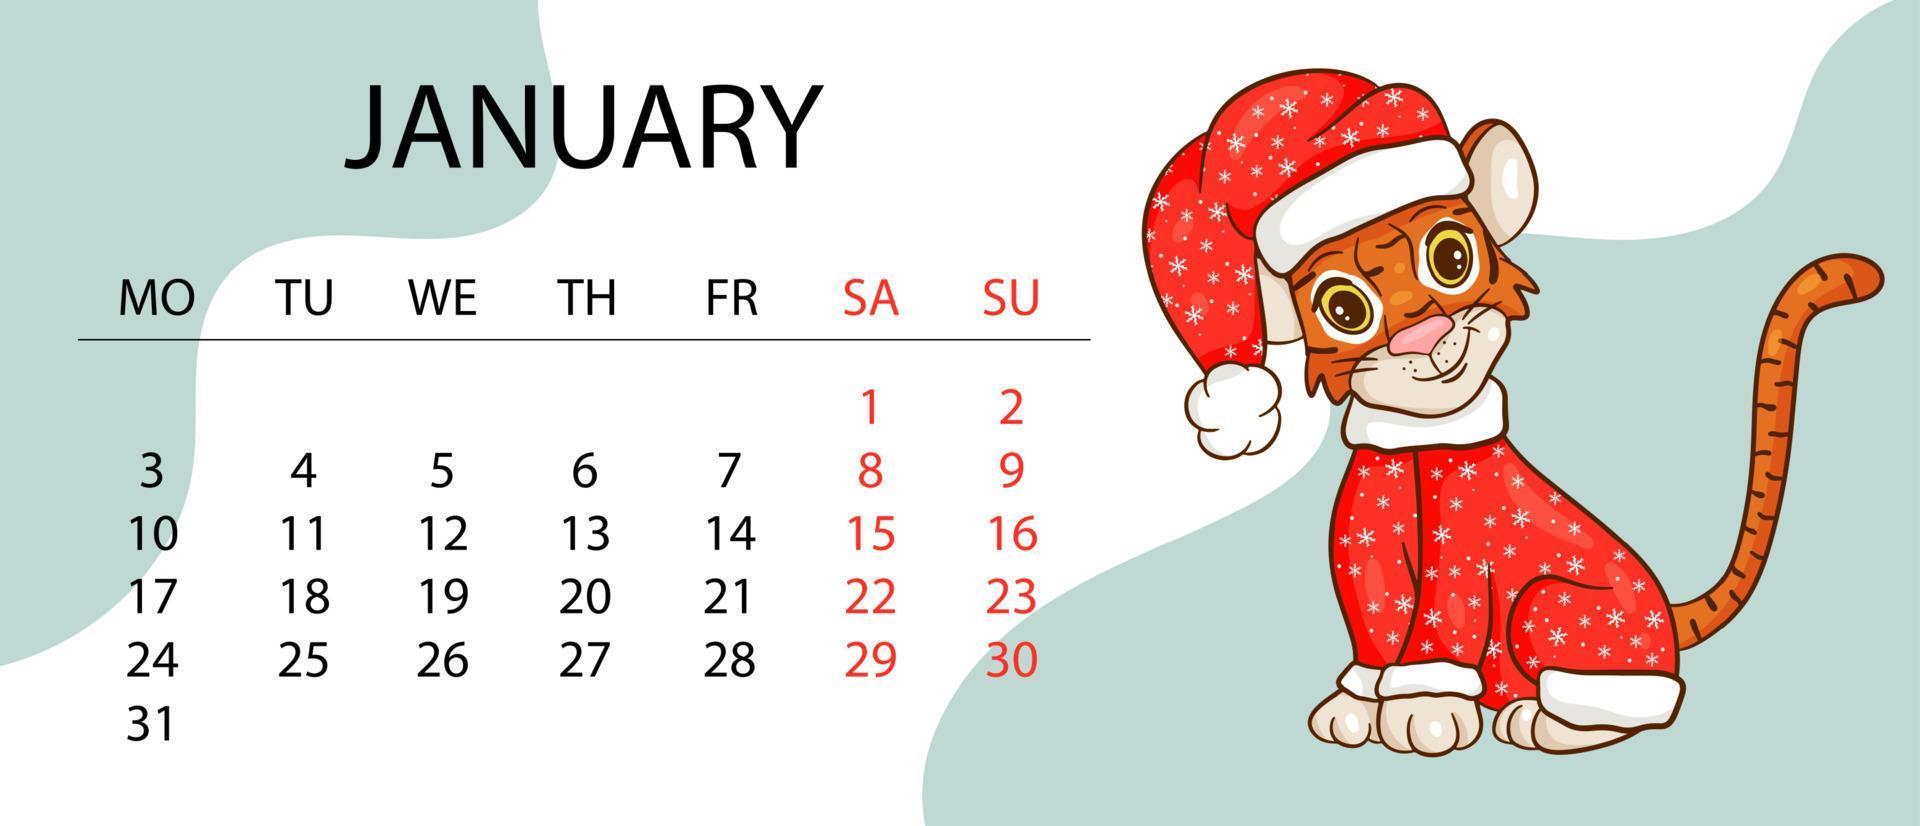 kalendermall för 2022, tigerns år enligt den kinesiska eller östra kalendern, med en illustration av tigern. horisontellt bord med kalender för 2022. vektor